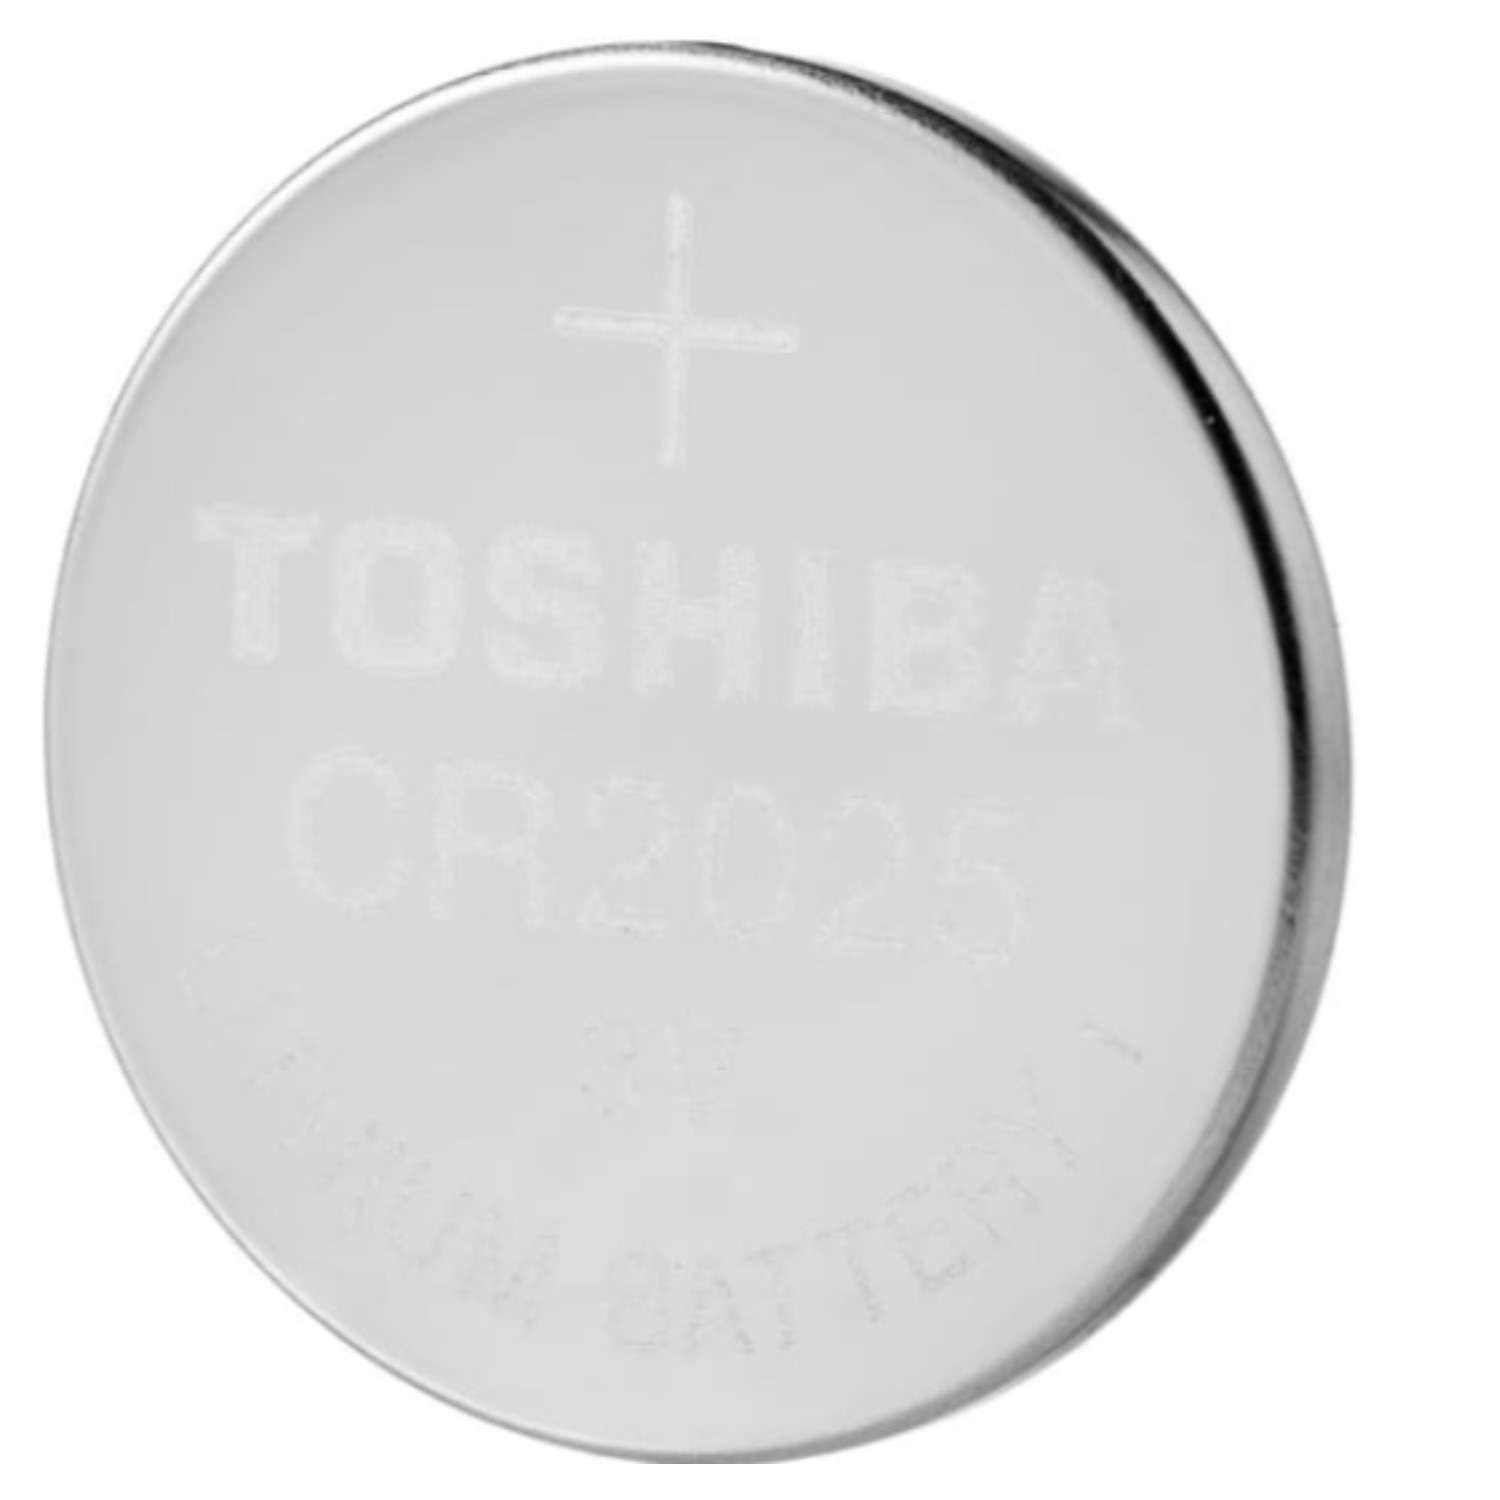 Батарейки Toshiba литиевые Таблетка Special 5шт CR2025 3V - фото 2